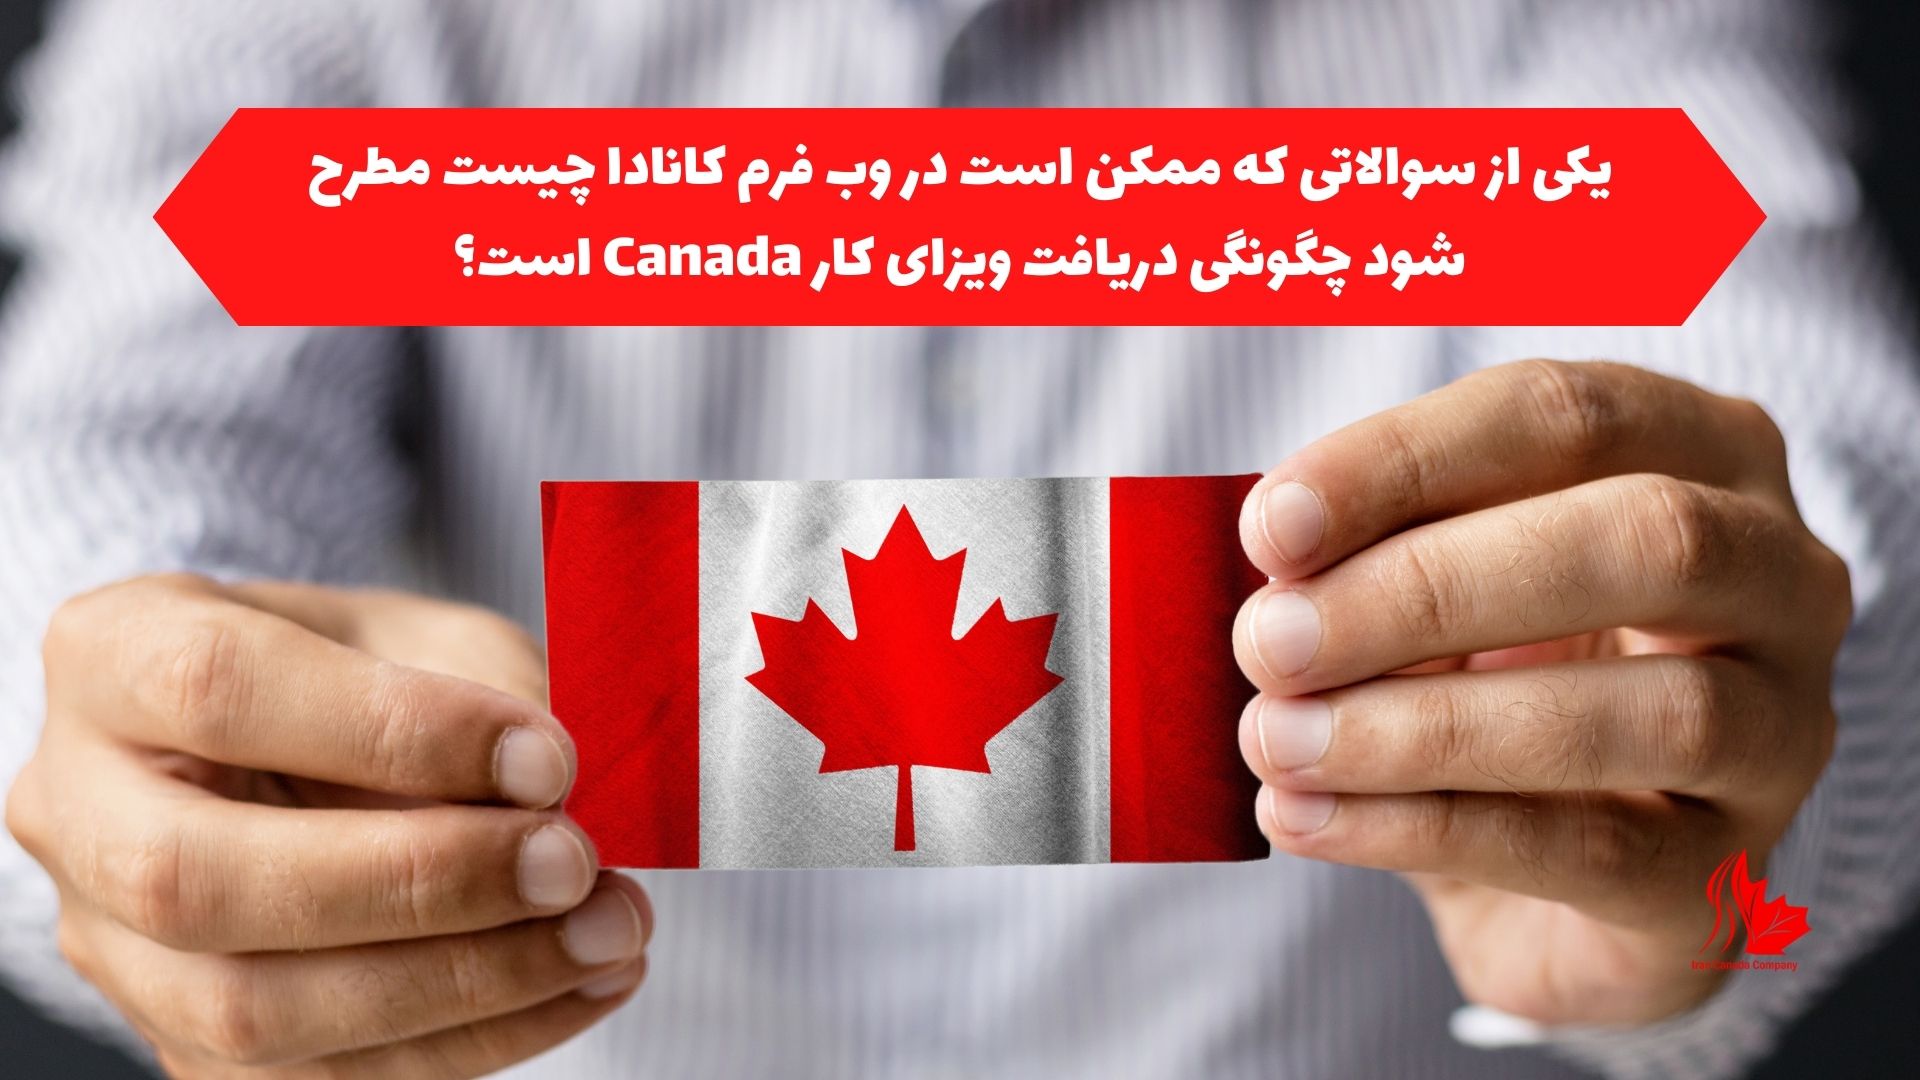 یکی از سوالاتی که ممکن است در وب فرم کانادا چیست مطرح شود چگونگی دریافت ویزای کار Canada است؟